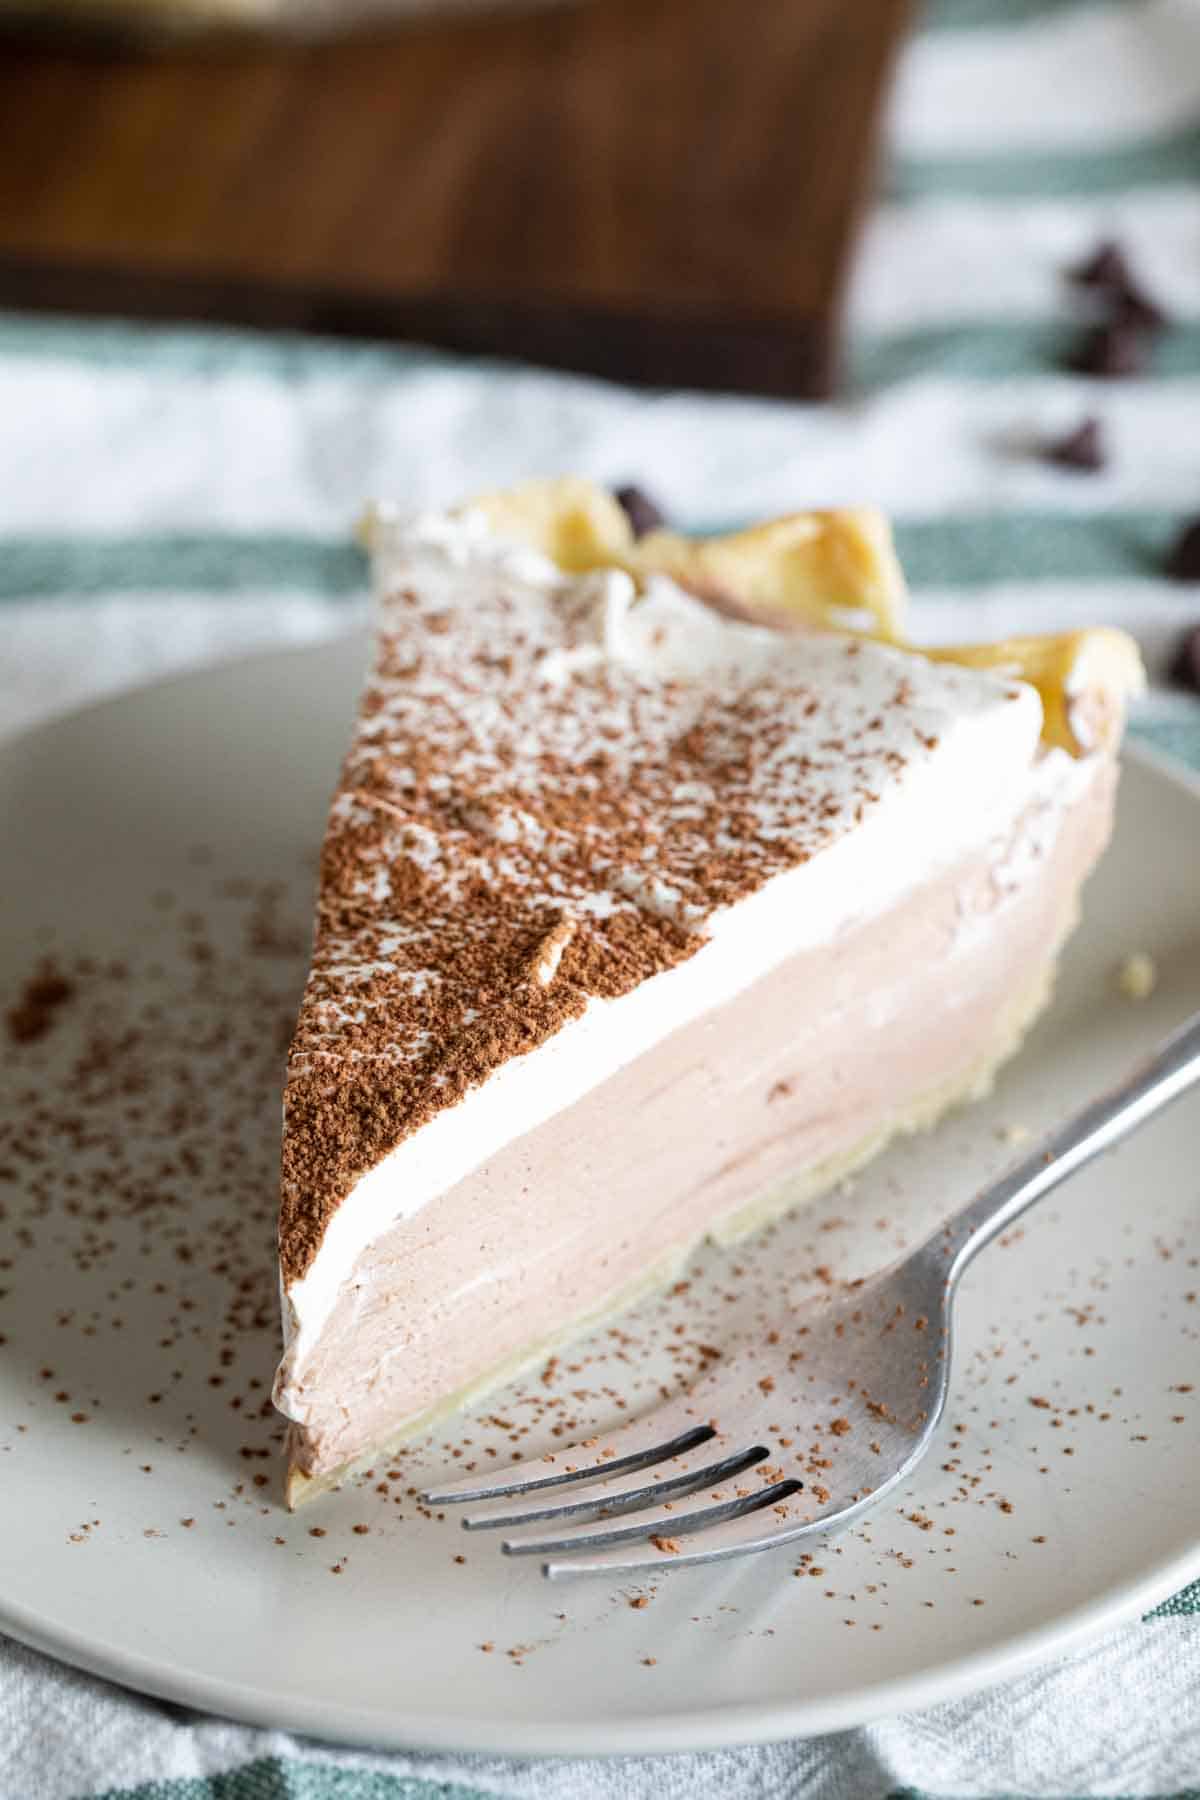 https://www.tasteandtellblog.com/wp-content/uploads/2021/11/Chocolate-Cream-Pie-6.jpg